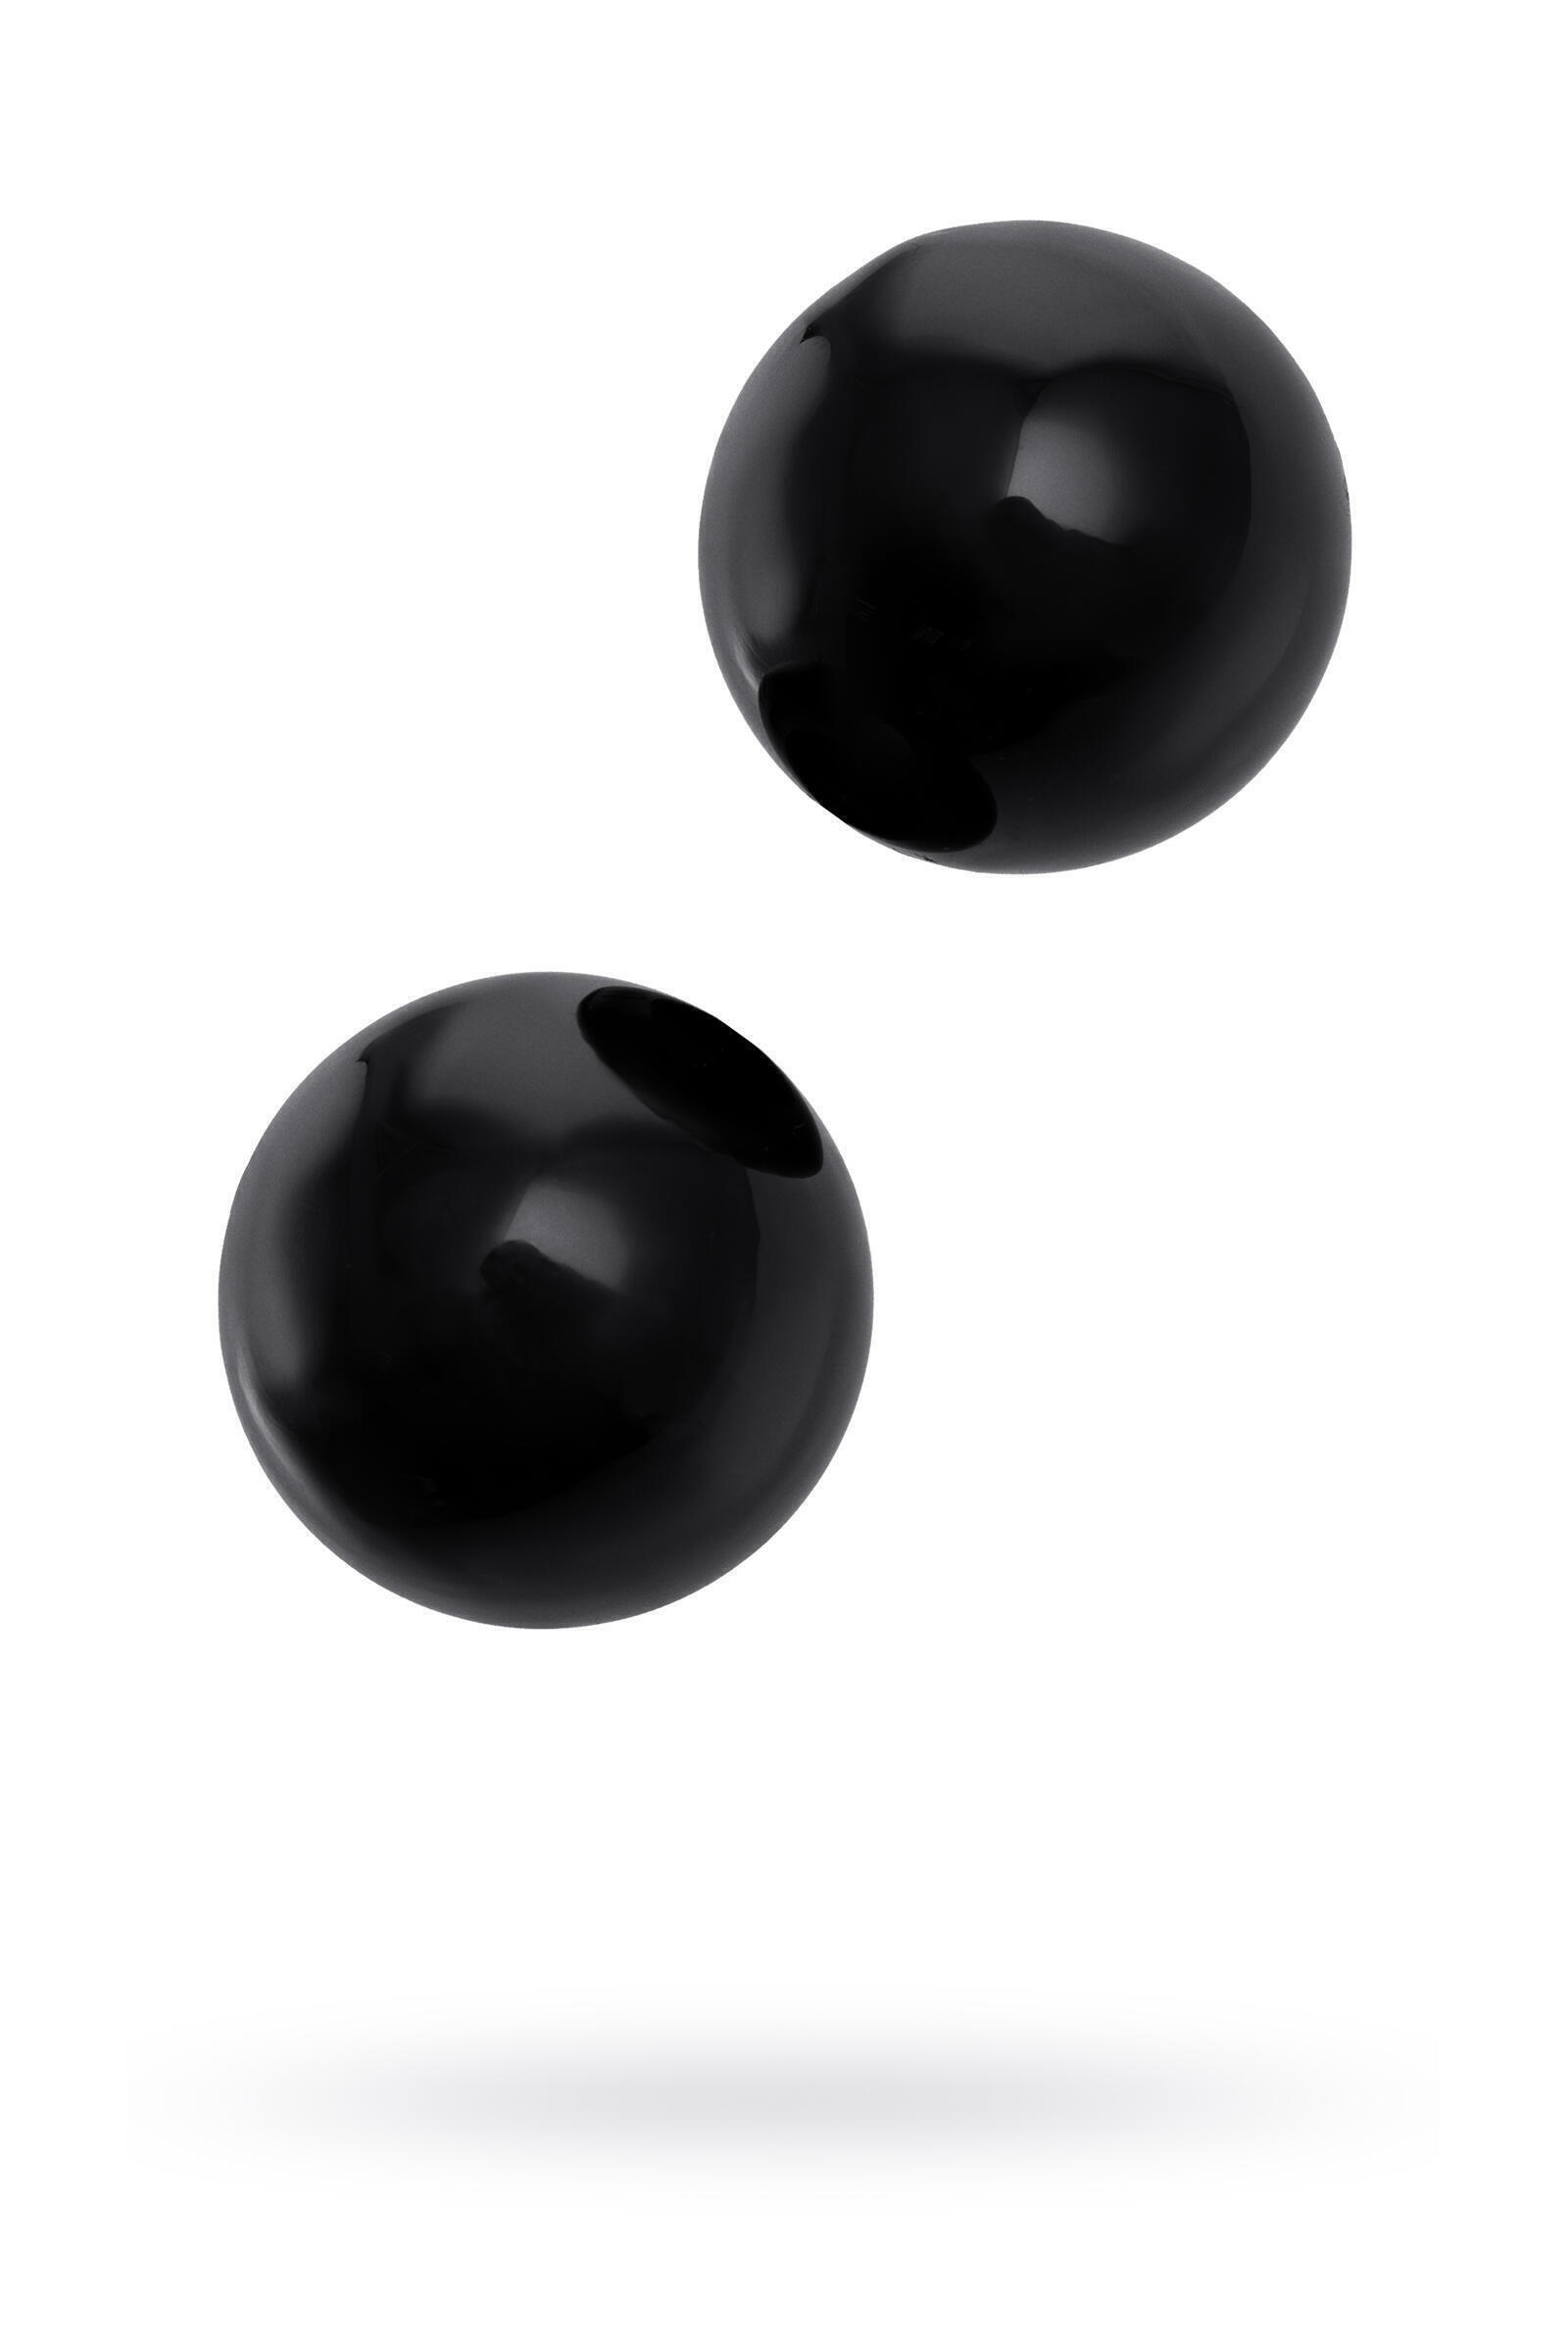 Вагинальные шарики Sexus Glass, чёрные